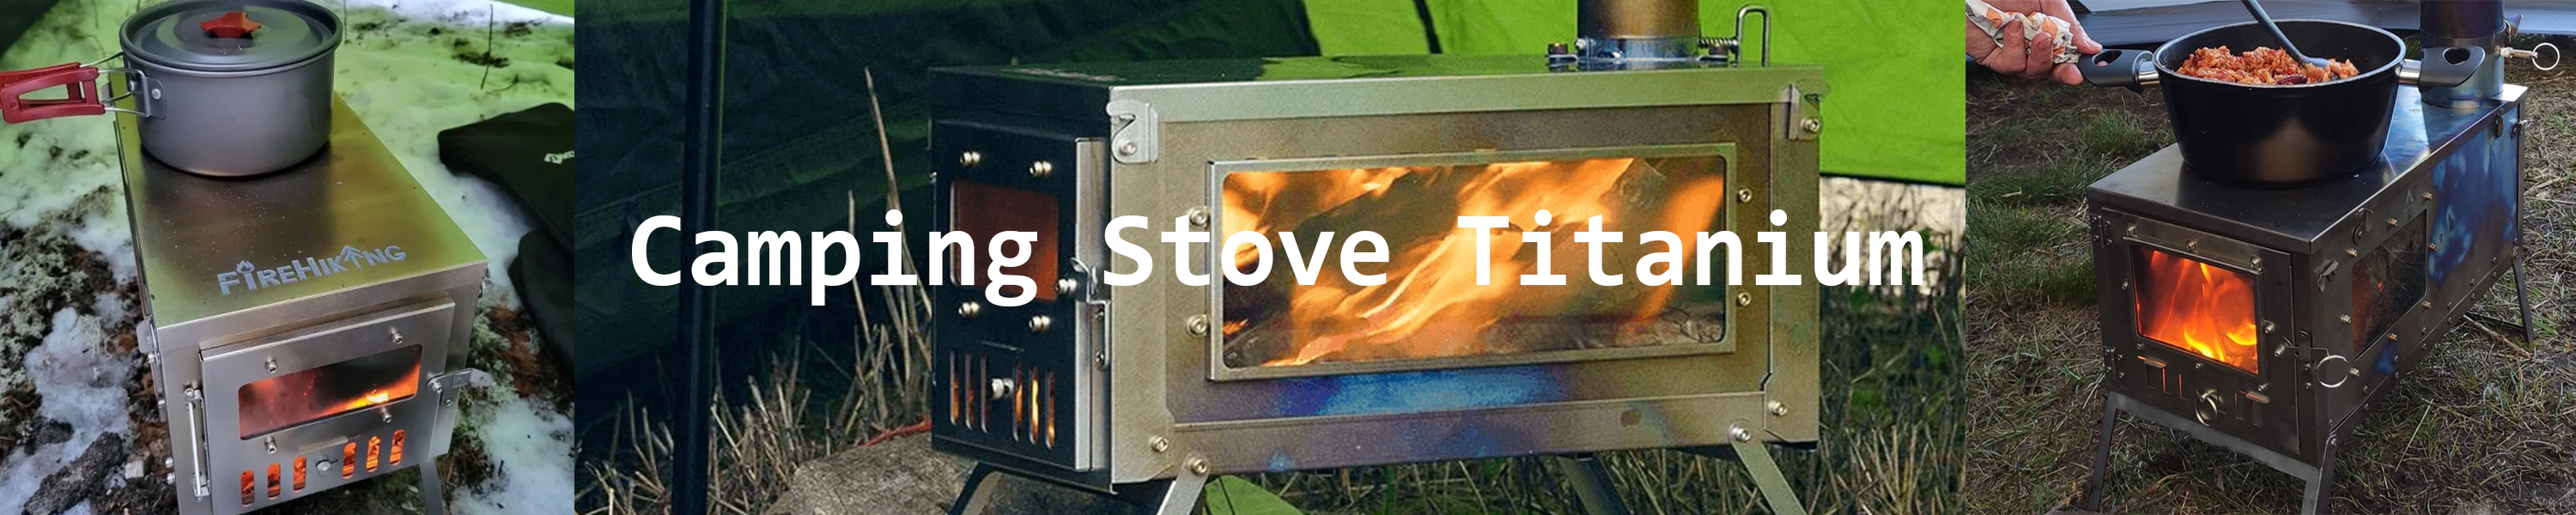 camping stove titanium